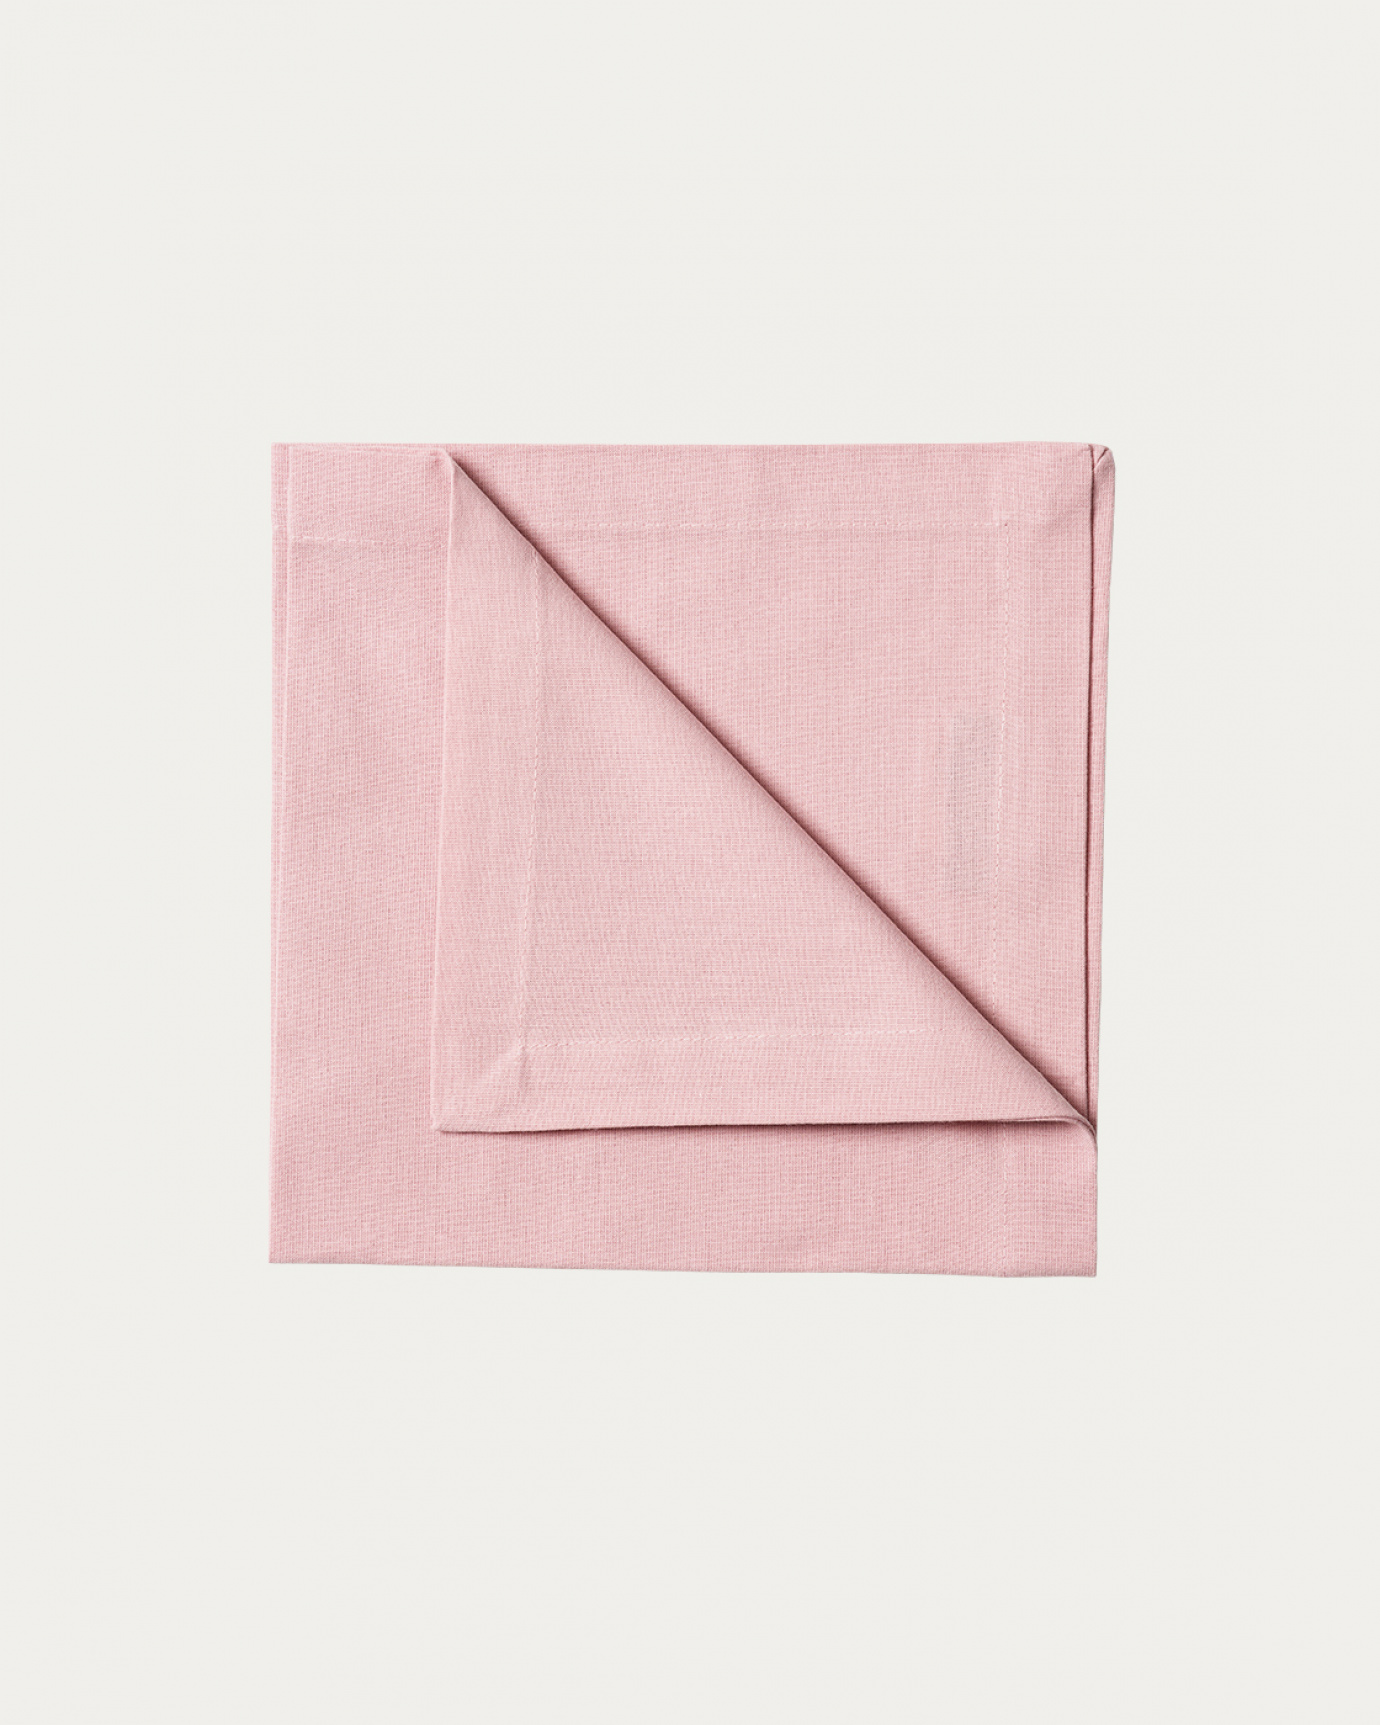 Produktbild dammig rosa ROBERT servett av mjuk bomull från LINUM DESIGN. Storlek 45x45 cm och säljs i 4 pack.